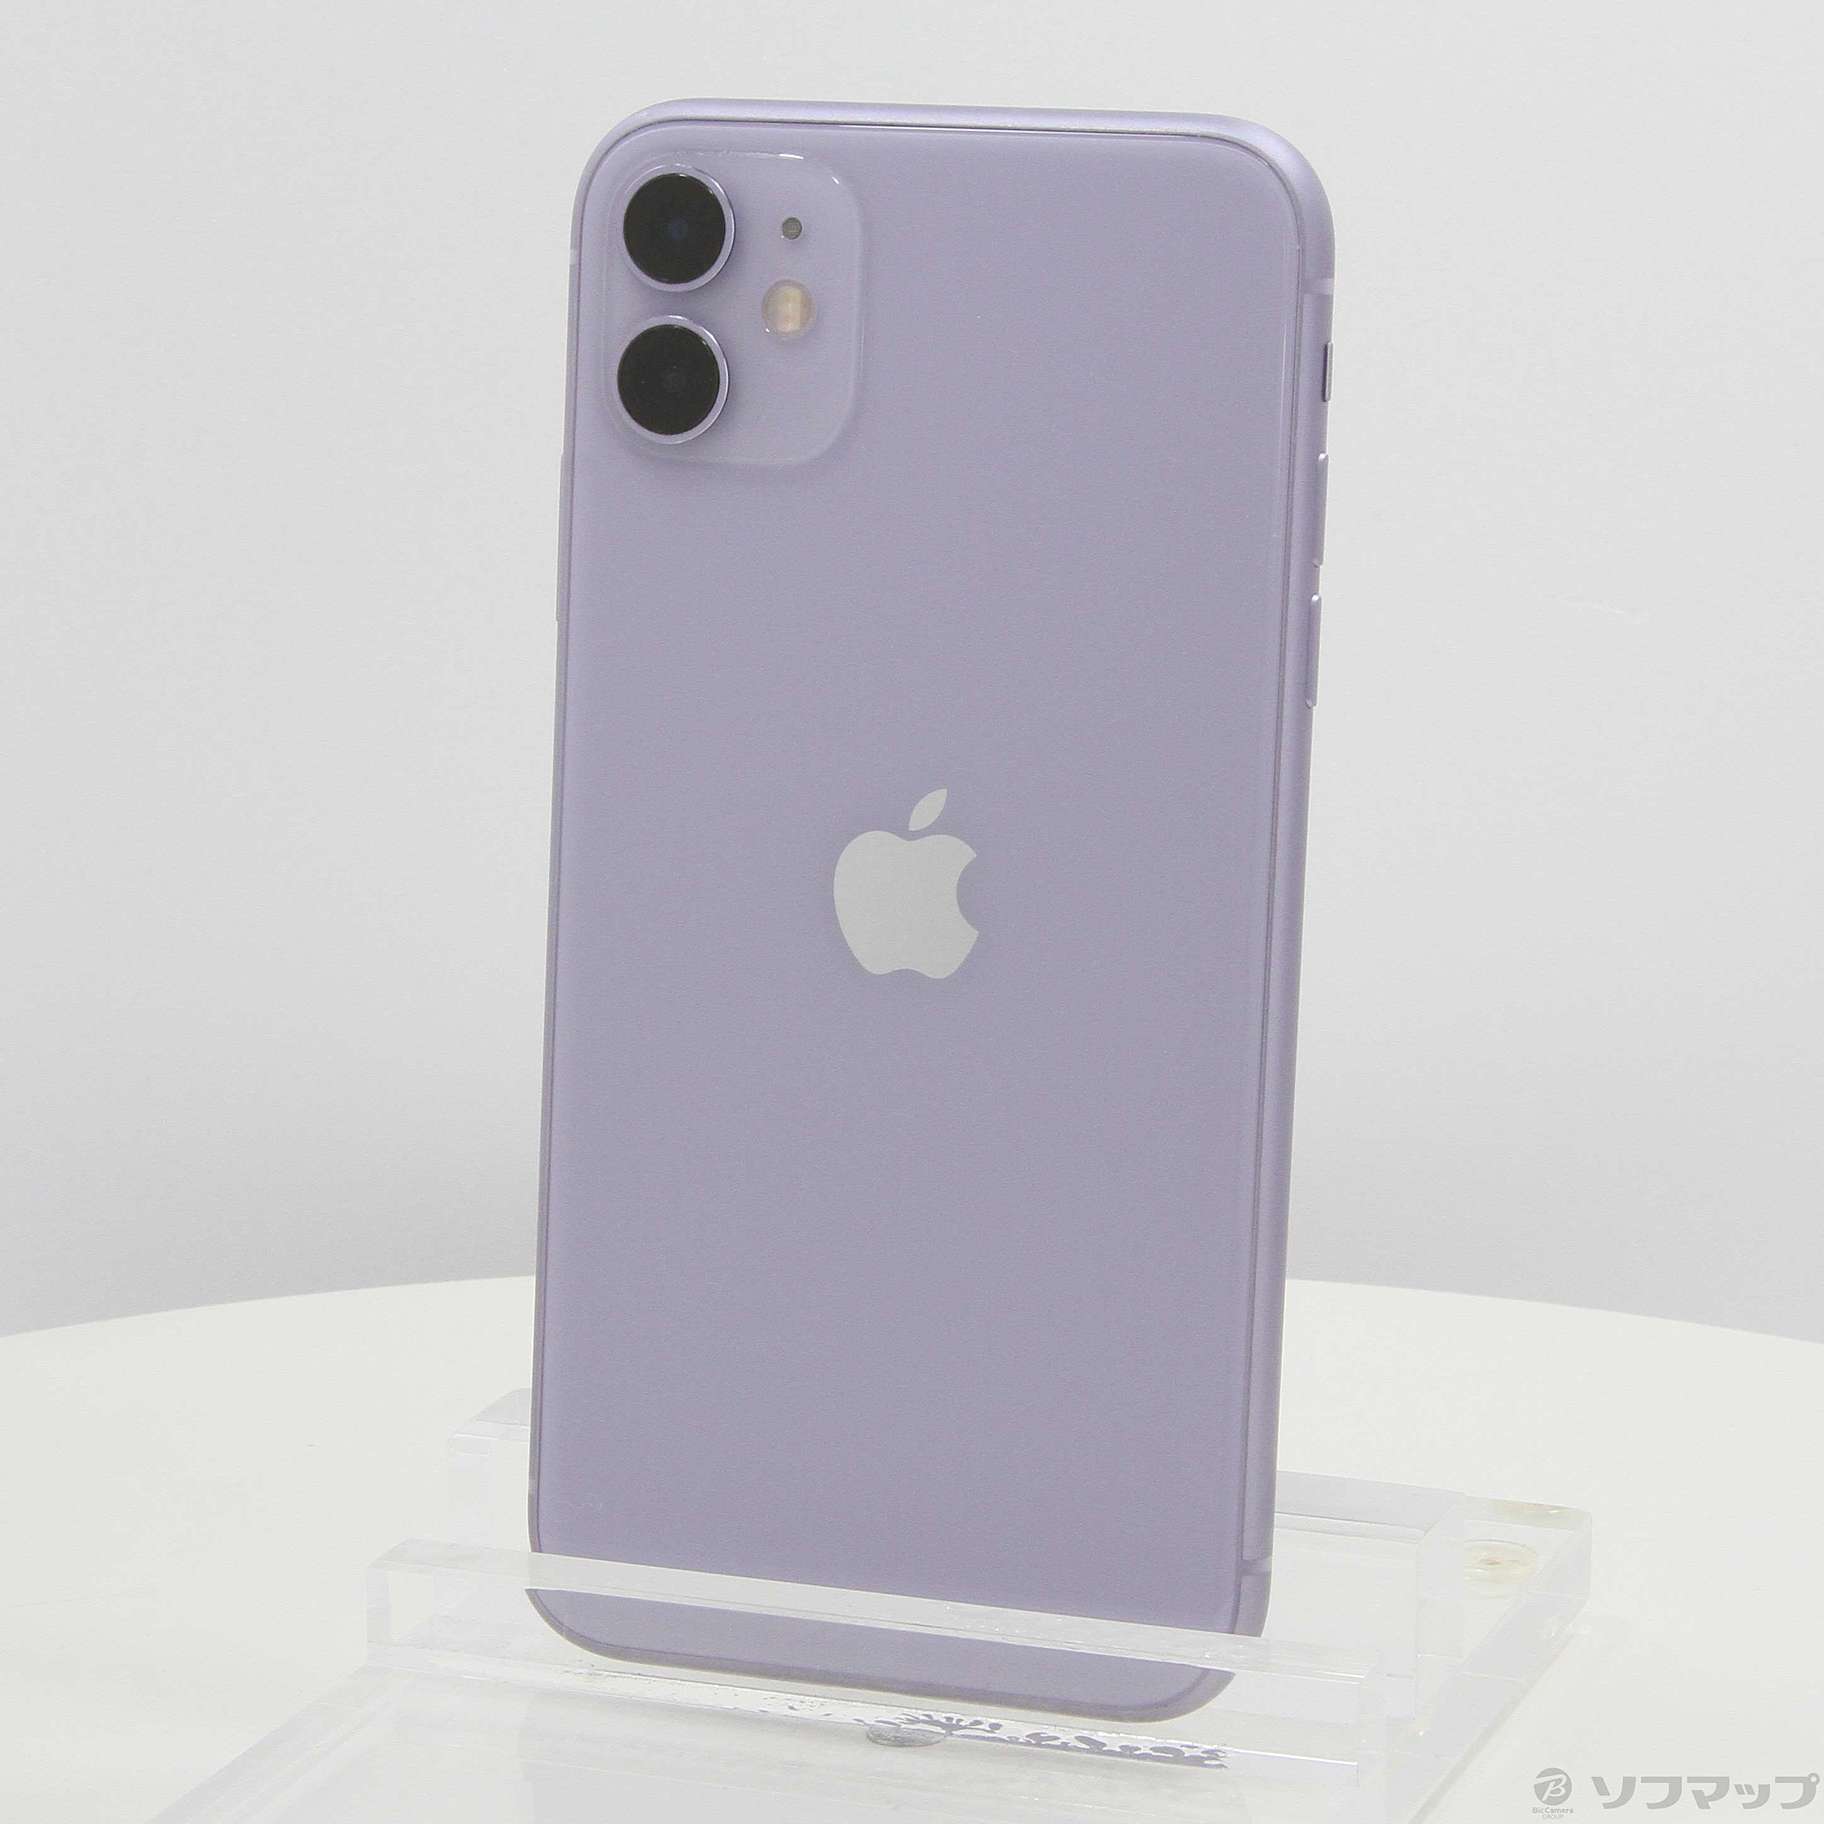 8,820円iPhone 11 パープル 64 GB Softbank